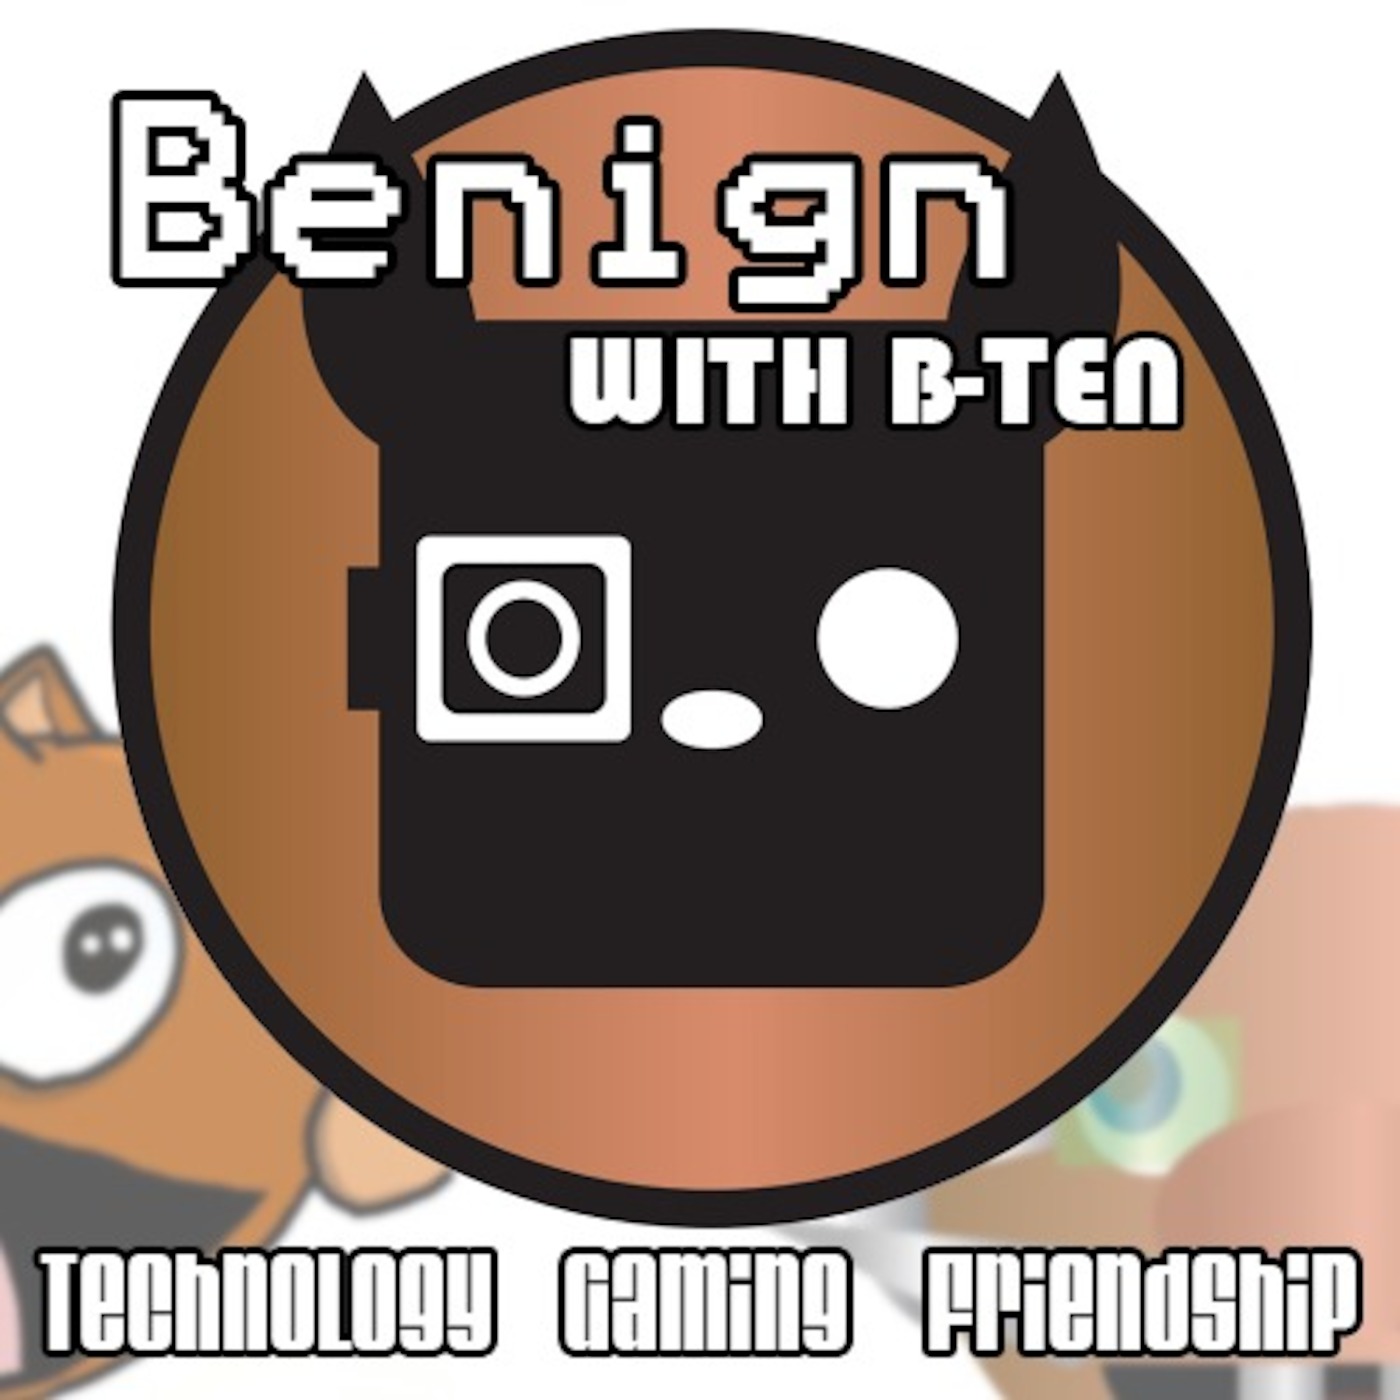 Benign with B-TEN